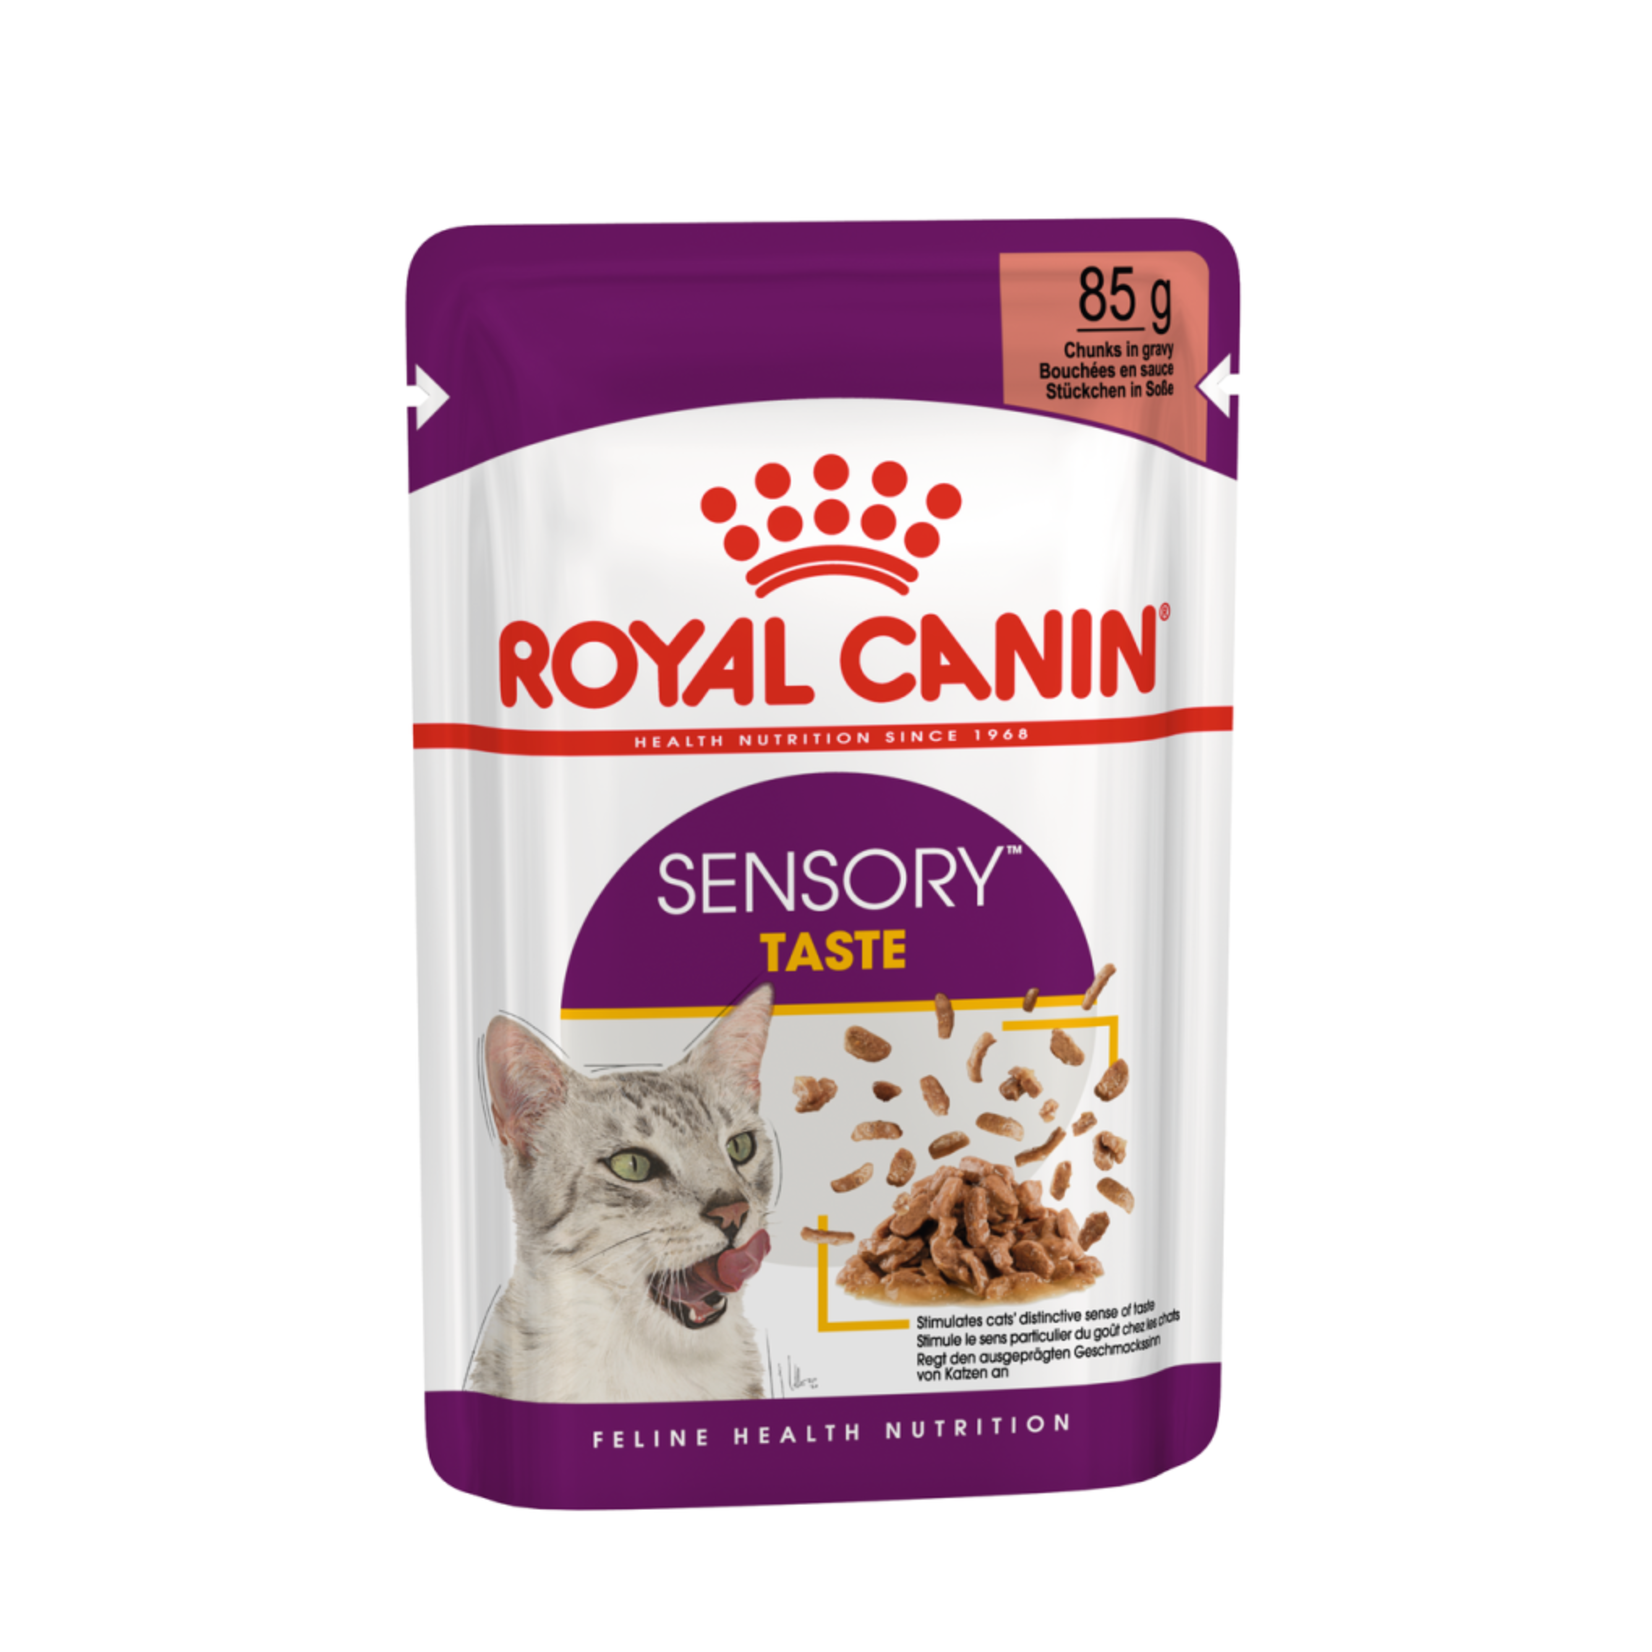 Royal Canin Sensory Taste in Gravy Cat Wet Food, 85g, box of 12